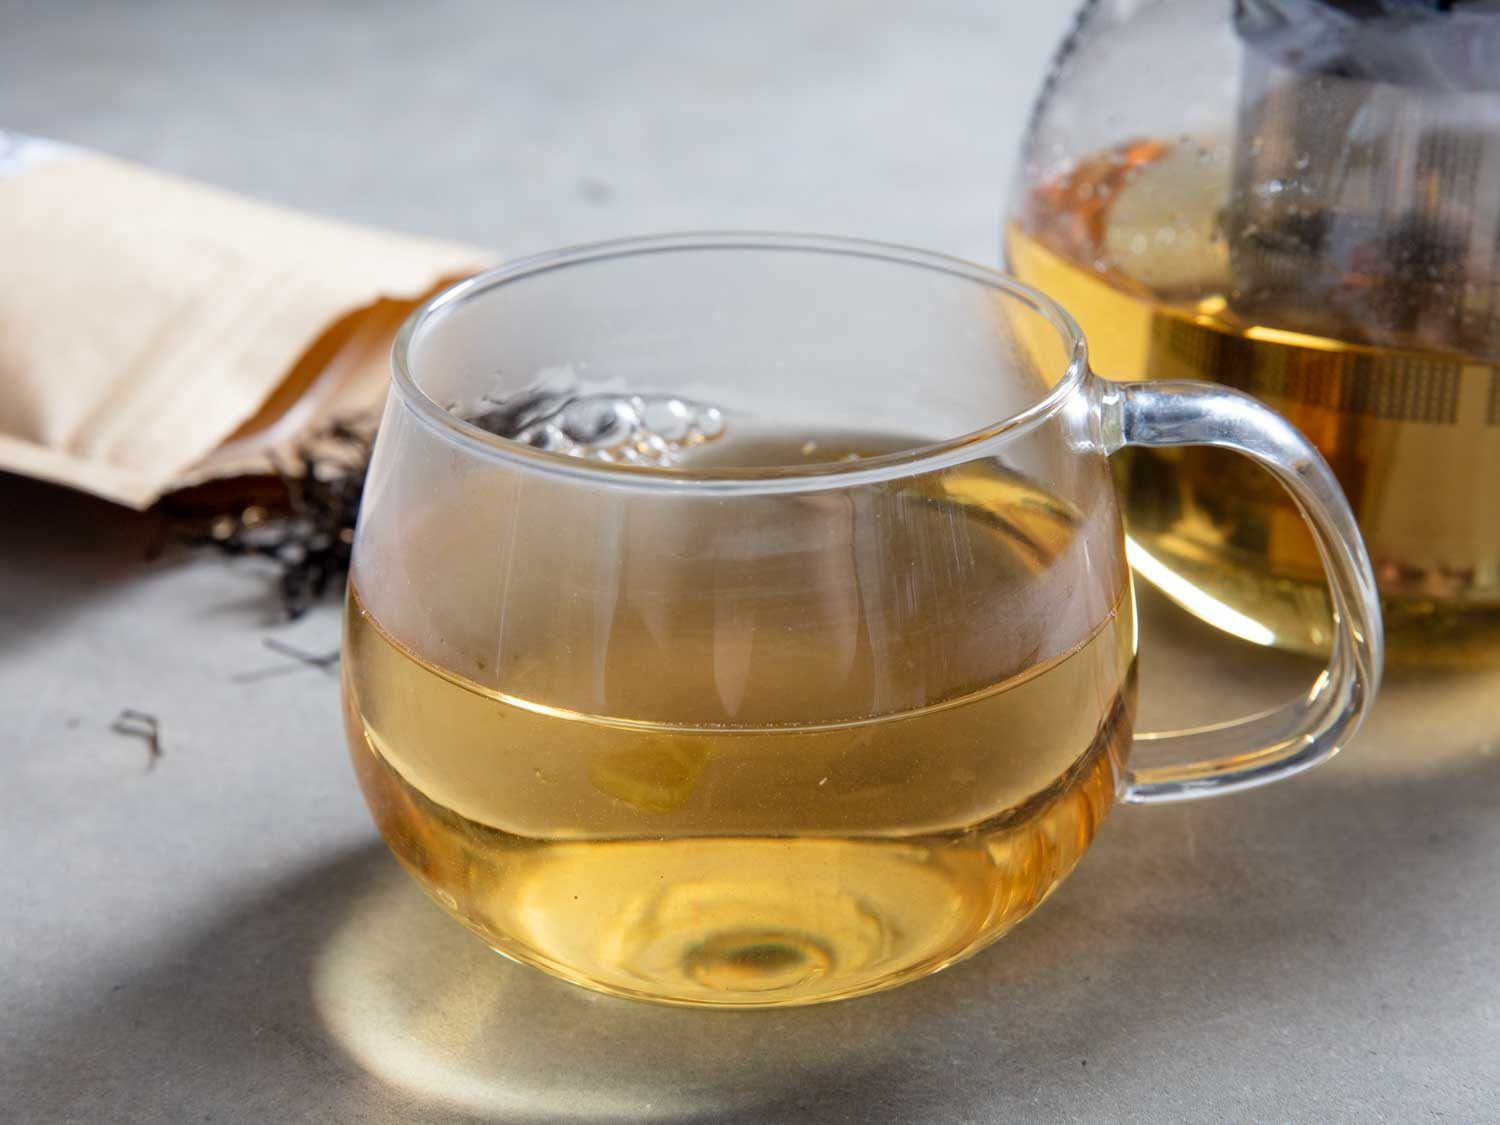 大密西西比茶叶公司(The Great Mississippi tea Company)的有柄红茶玻璃杯，背景是散装红茶和一瓶茶